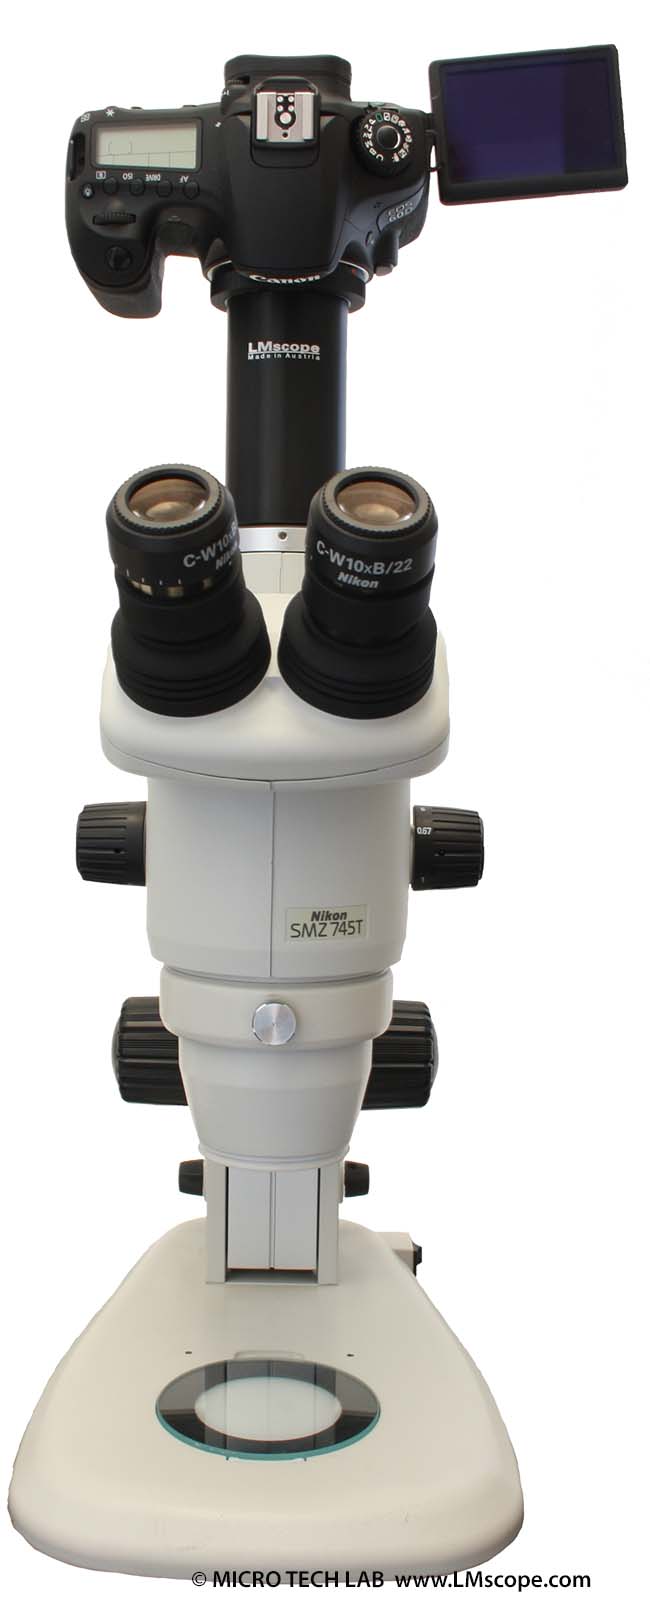 Canon EOS 60D and Nikon SMZ745T microscope